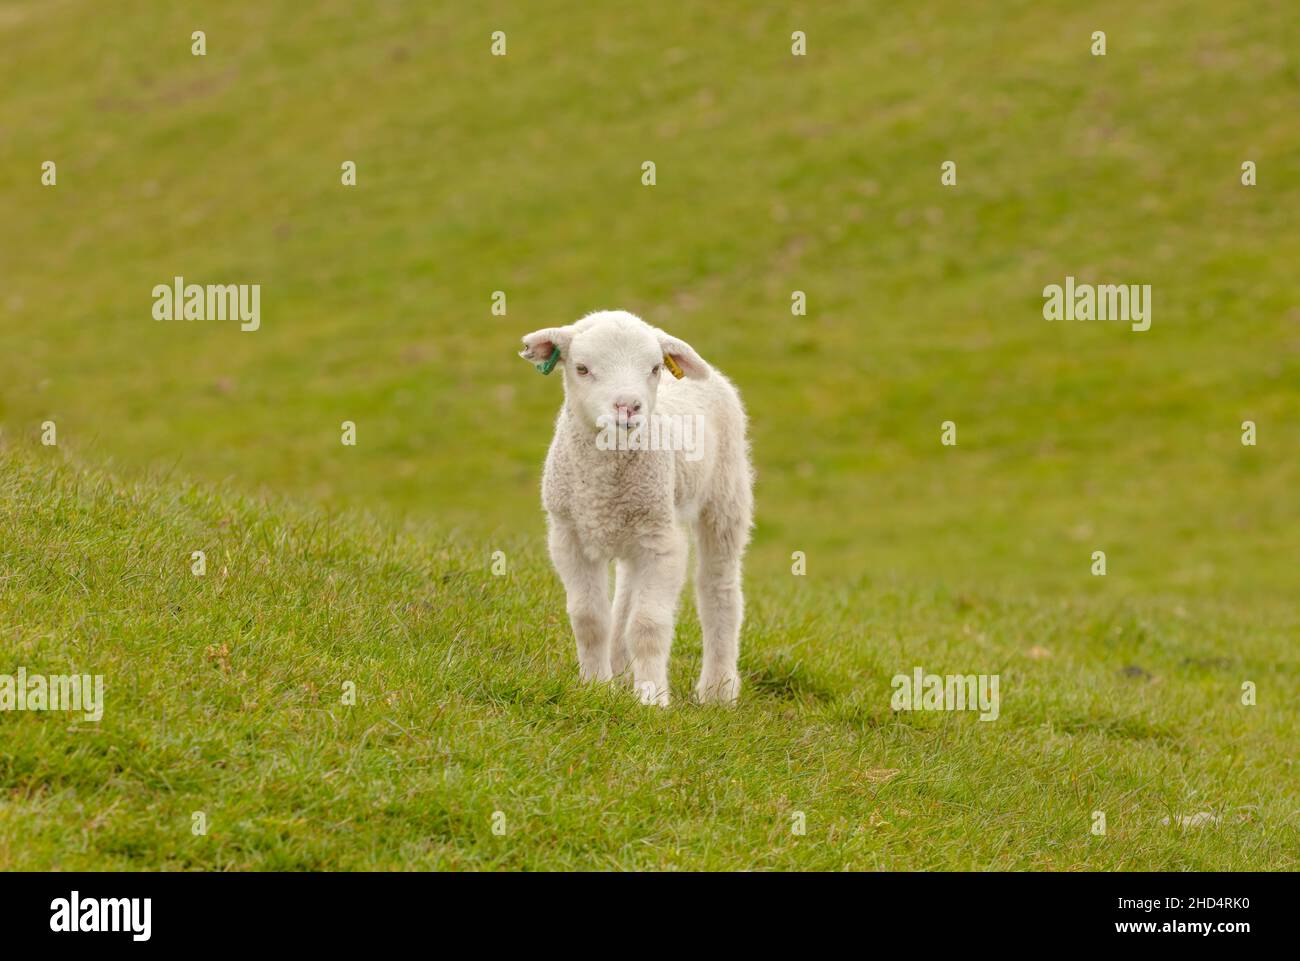 Süßes, junges Lamm, das im Frühling verloren aussieht und mit Ohrmarken und Ohrkerbe im rechten Ohr nach vorne auf der grünen Weide blickt. Sauberer, grüner Hintergrund Stockfoto